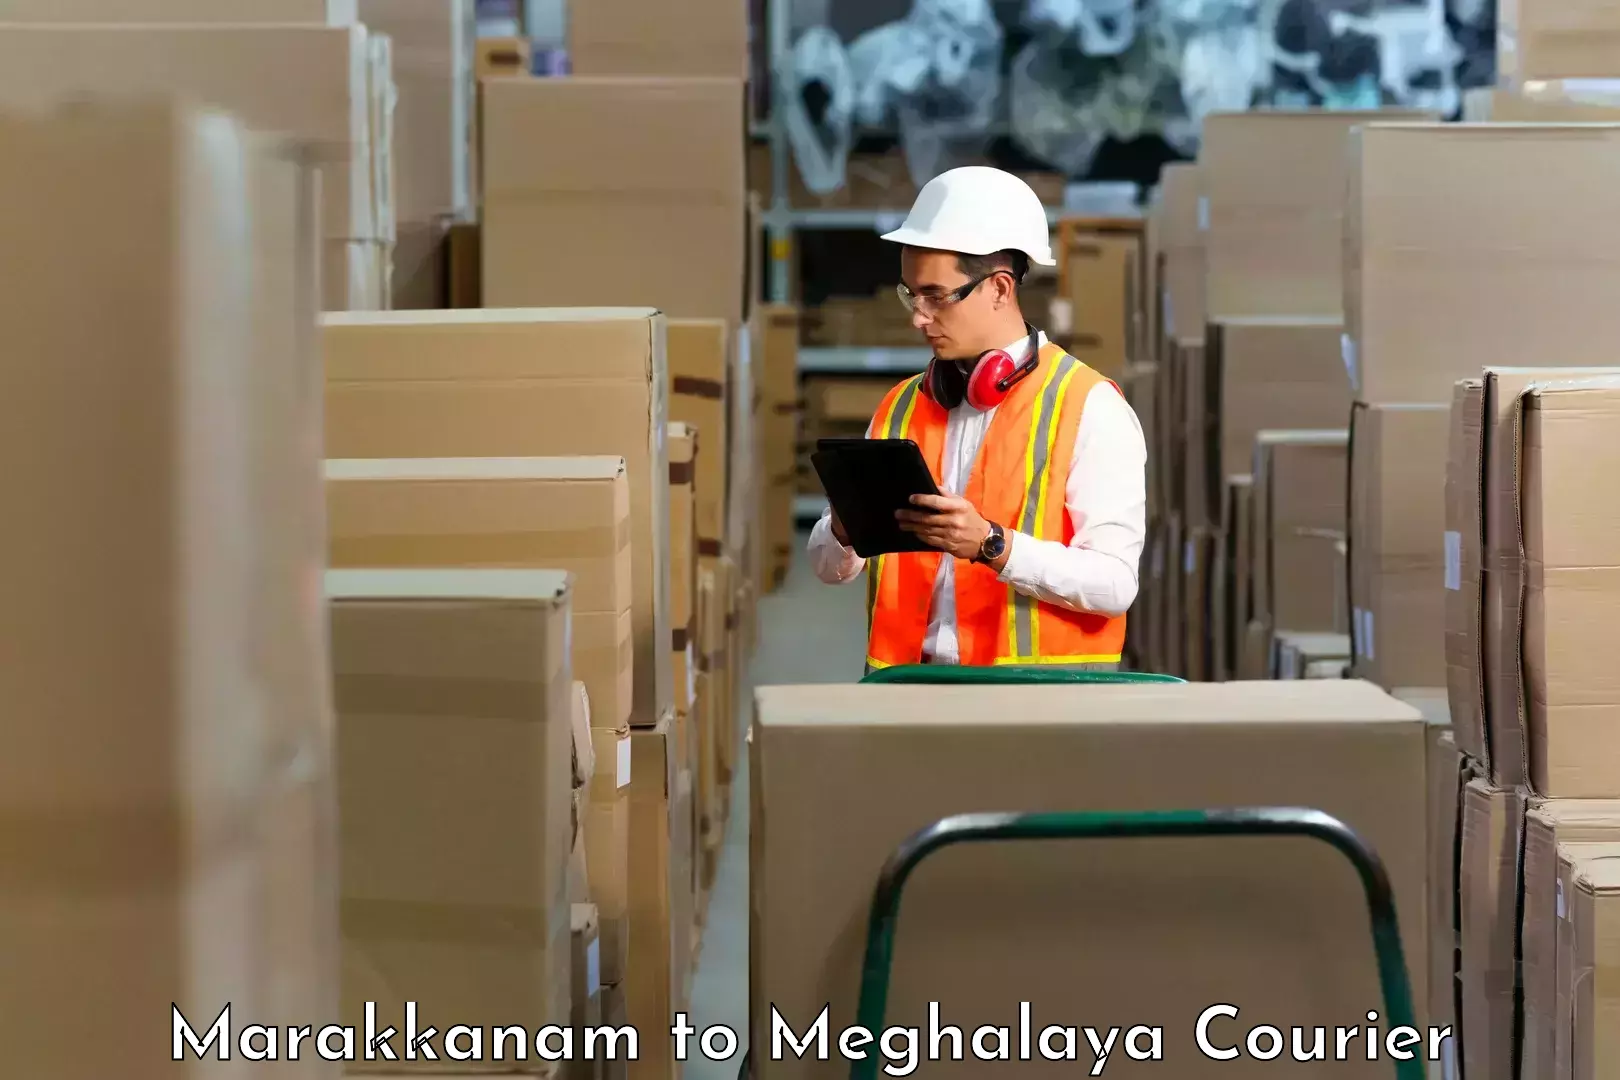 Smart shipping technology Marakkanam to Meghalaya